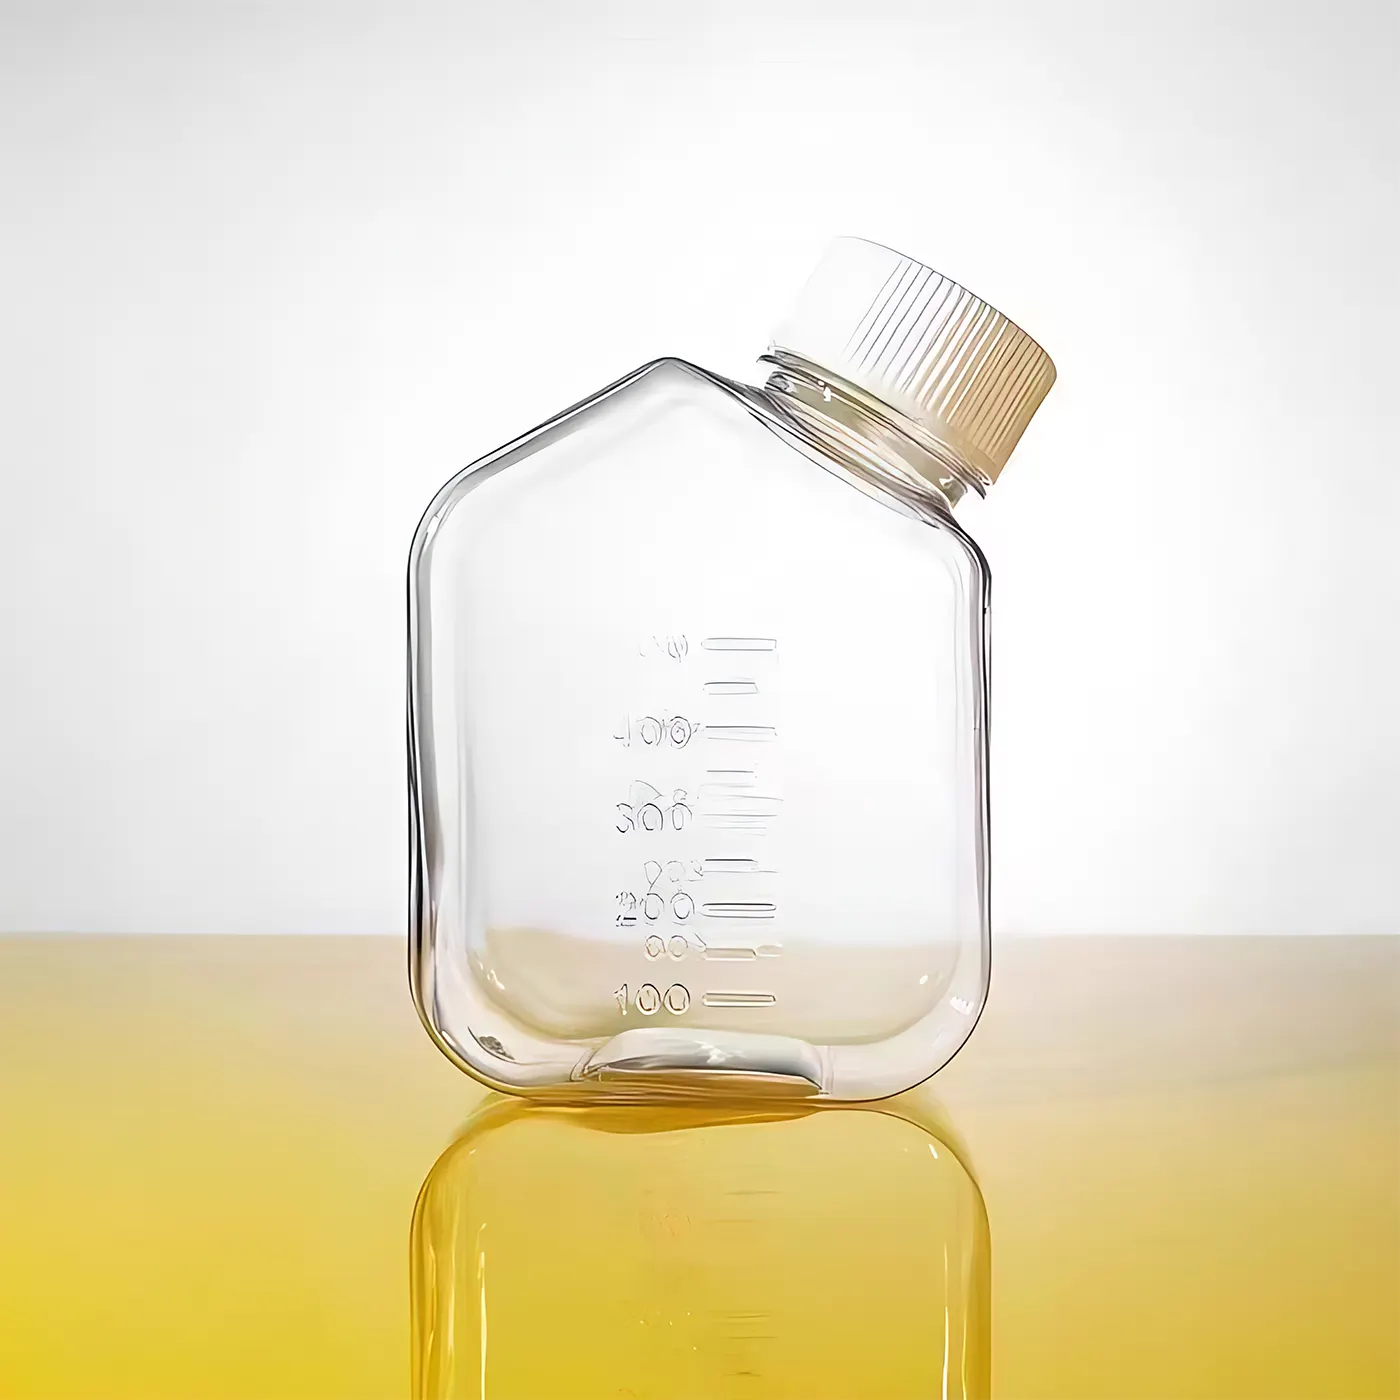 Yüksek kaliteli laboratuvar medya depolama şişesi tek kullanımlık kare şekli reaktif kültür şişeleri çeşitli boyutları mevcut PP PTFE plastik